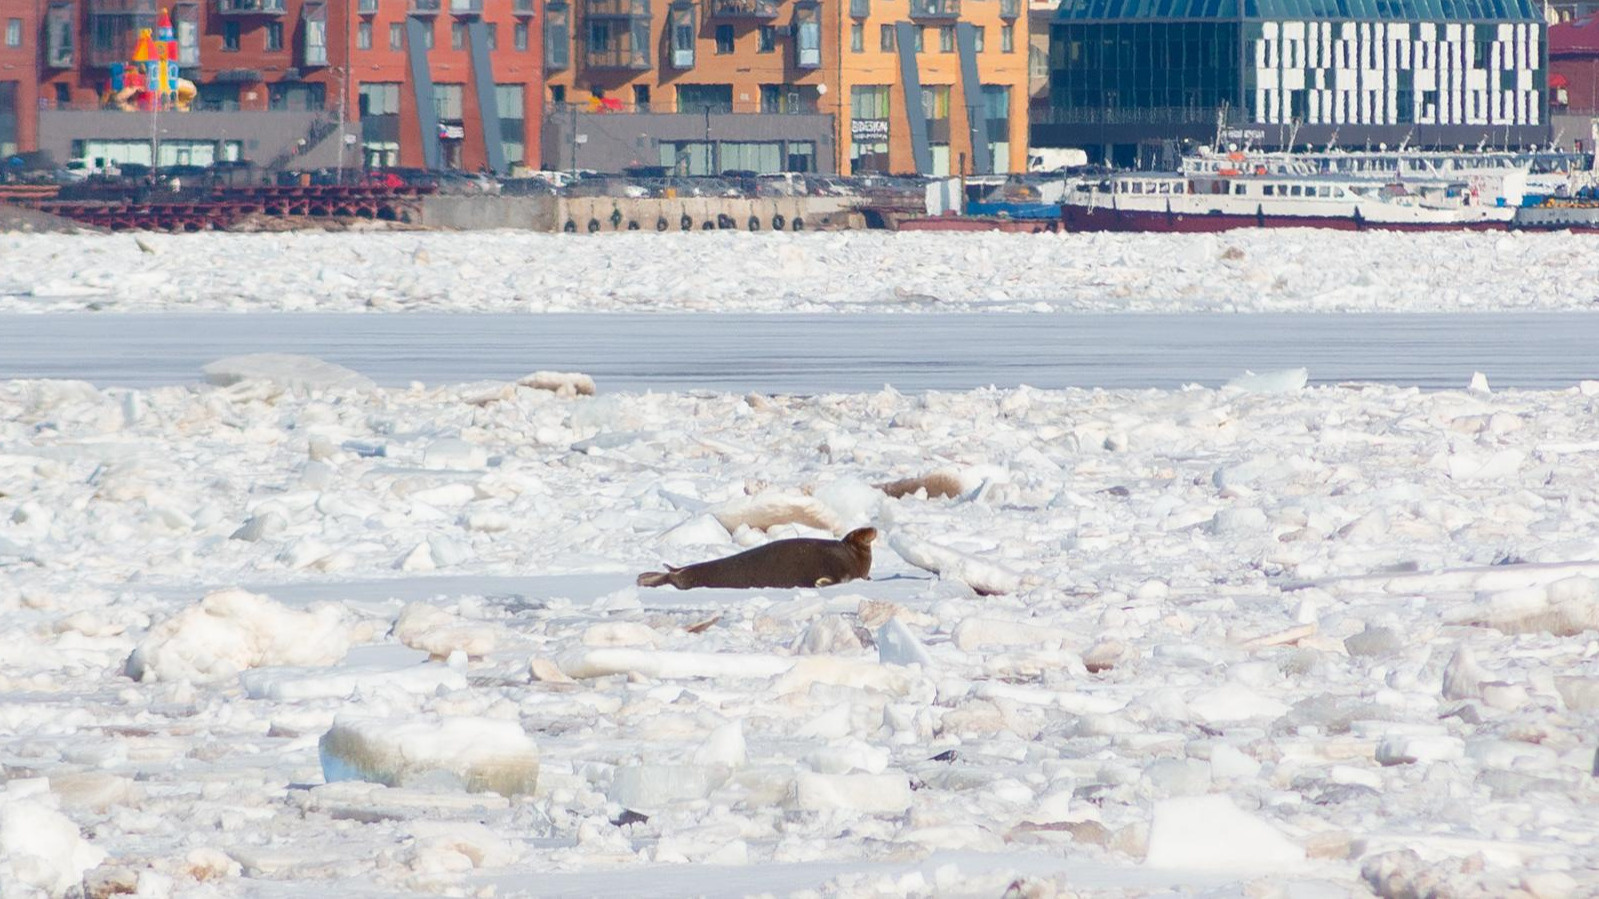 В Архангельской области обсуждают убийство тюленей: какие звезды защищали бельков 16 лет назад